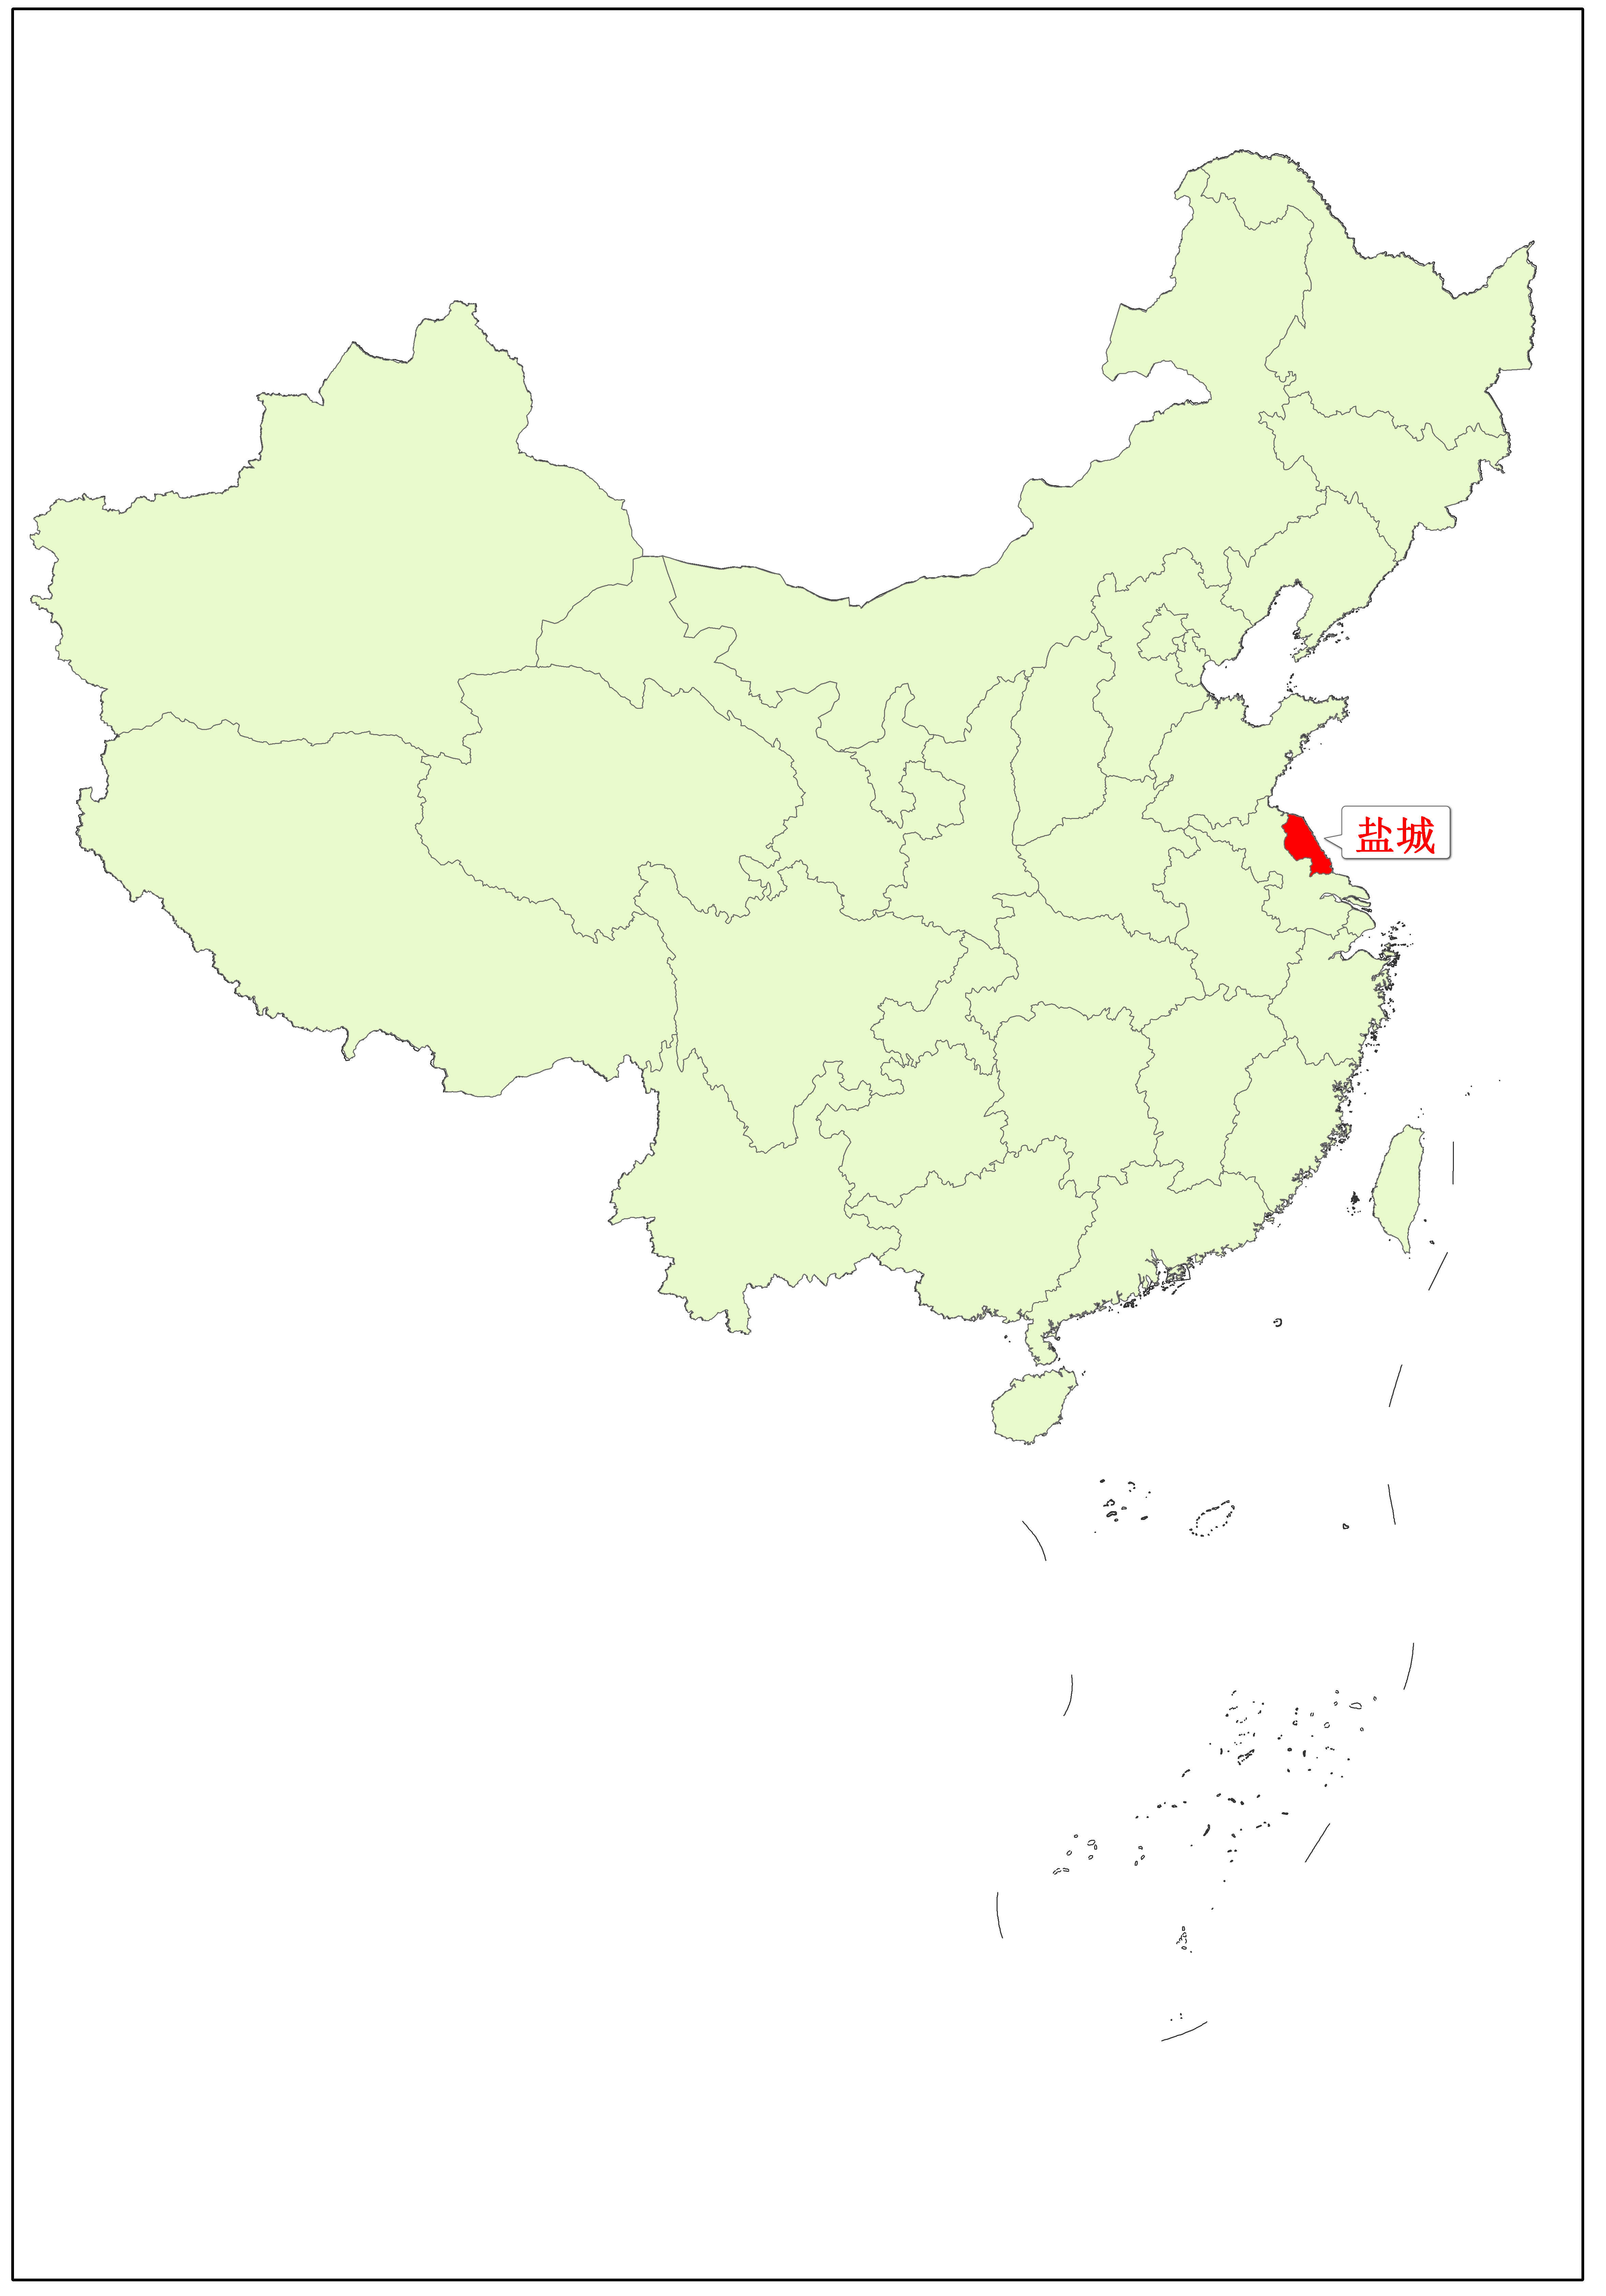 盐城在中国的位置